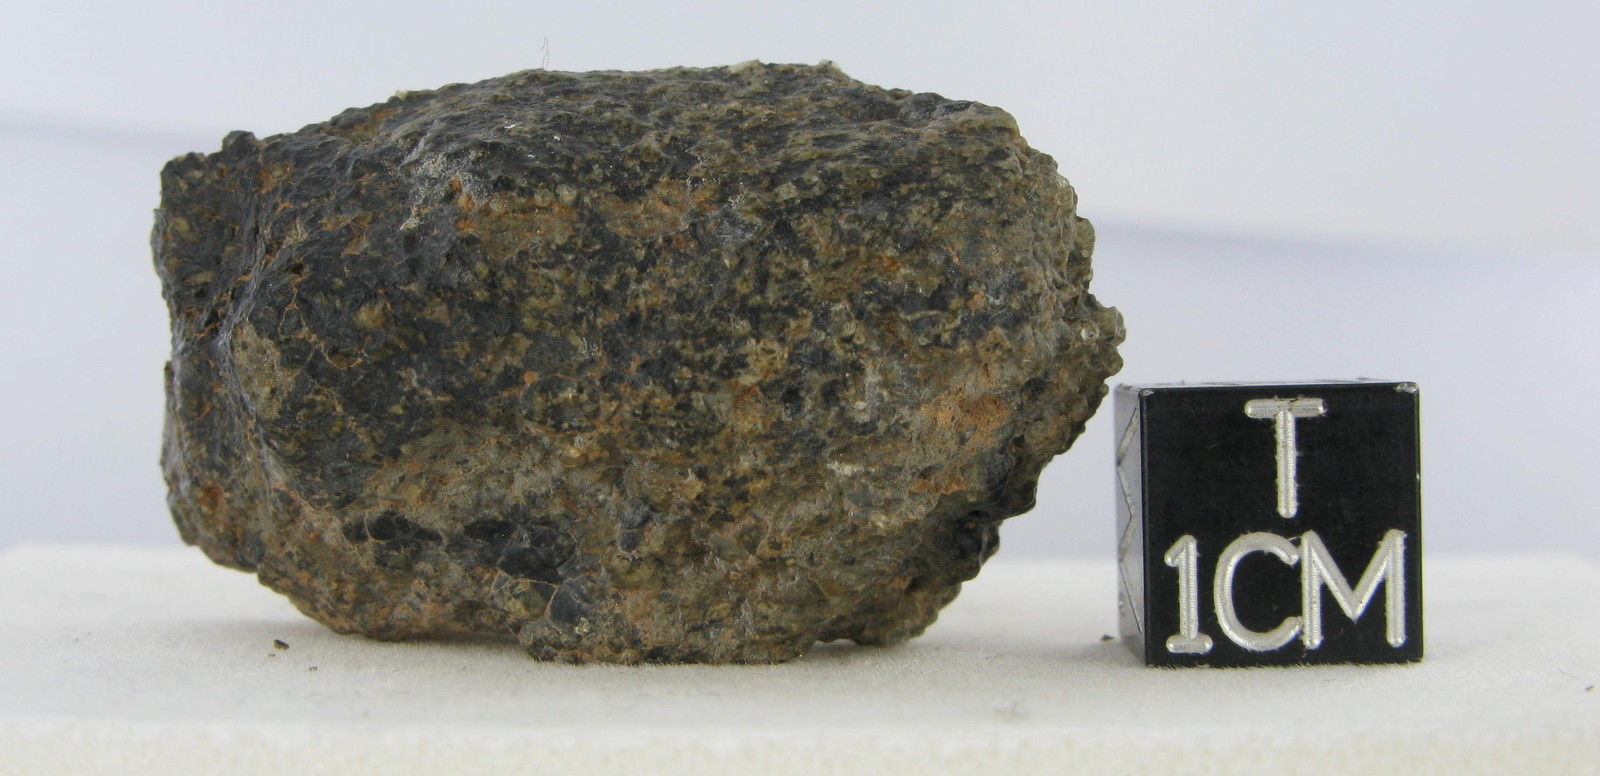 martian meteorite - NWA 2975 11.jpg